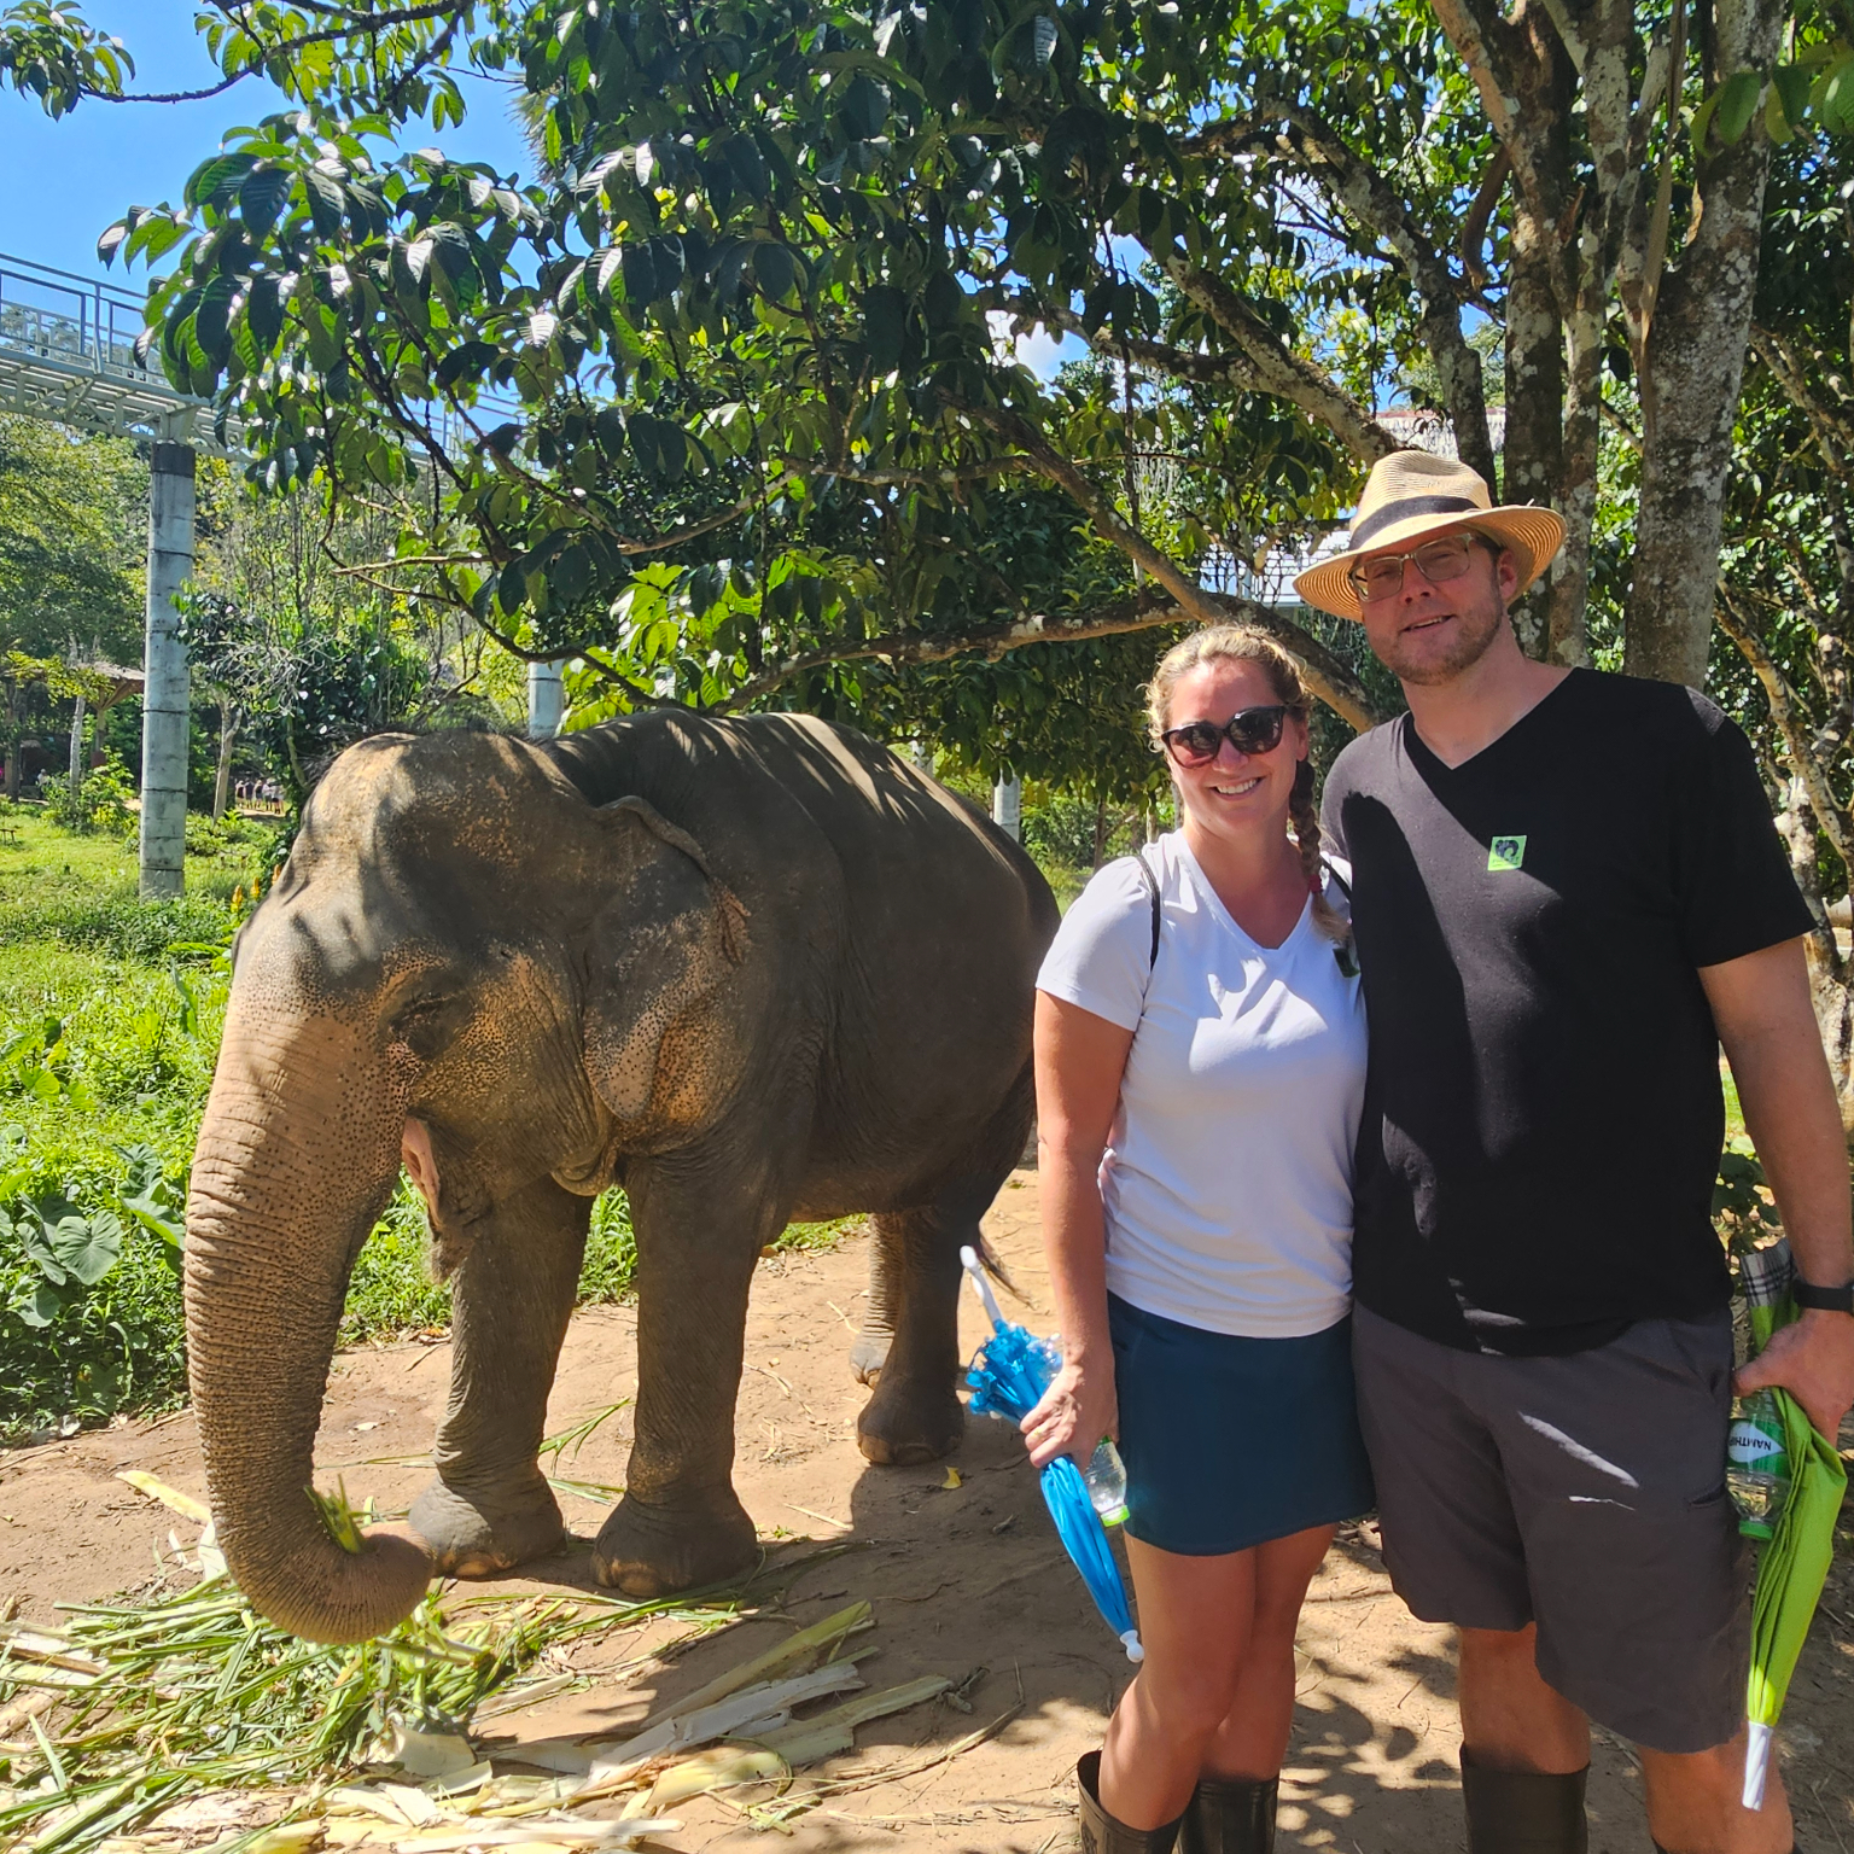 Feeding the Elephants at the Elephany Sanctuary in Thailand